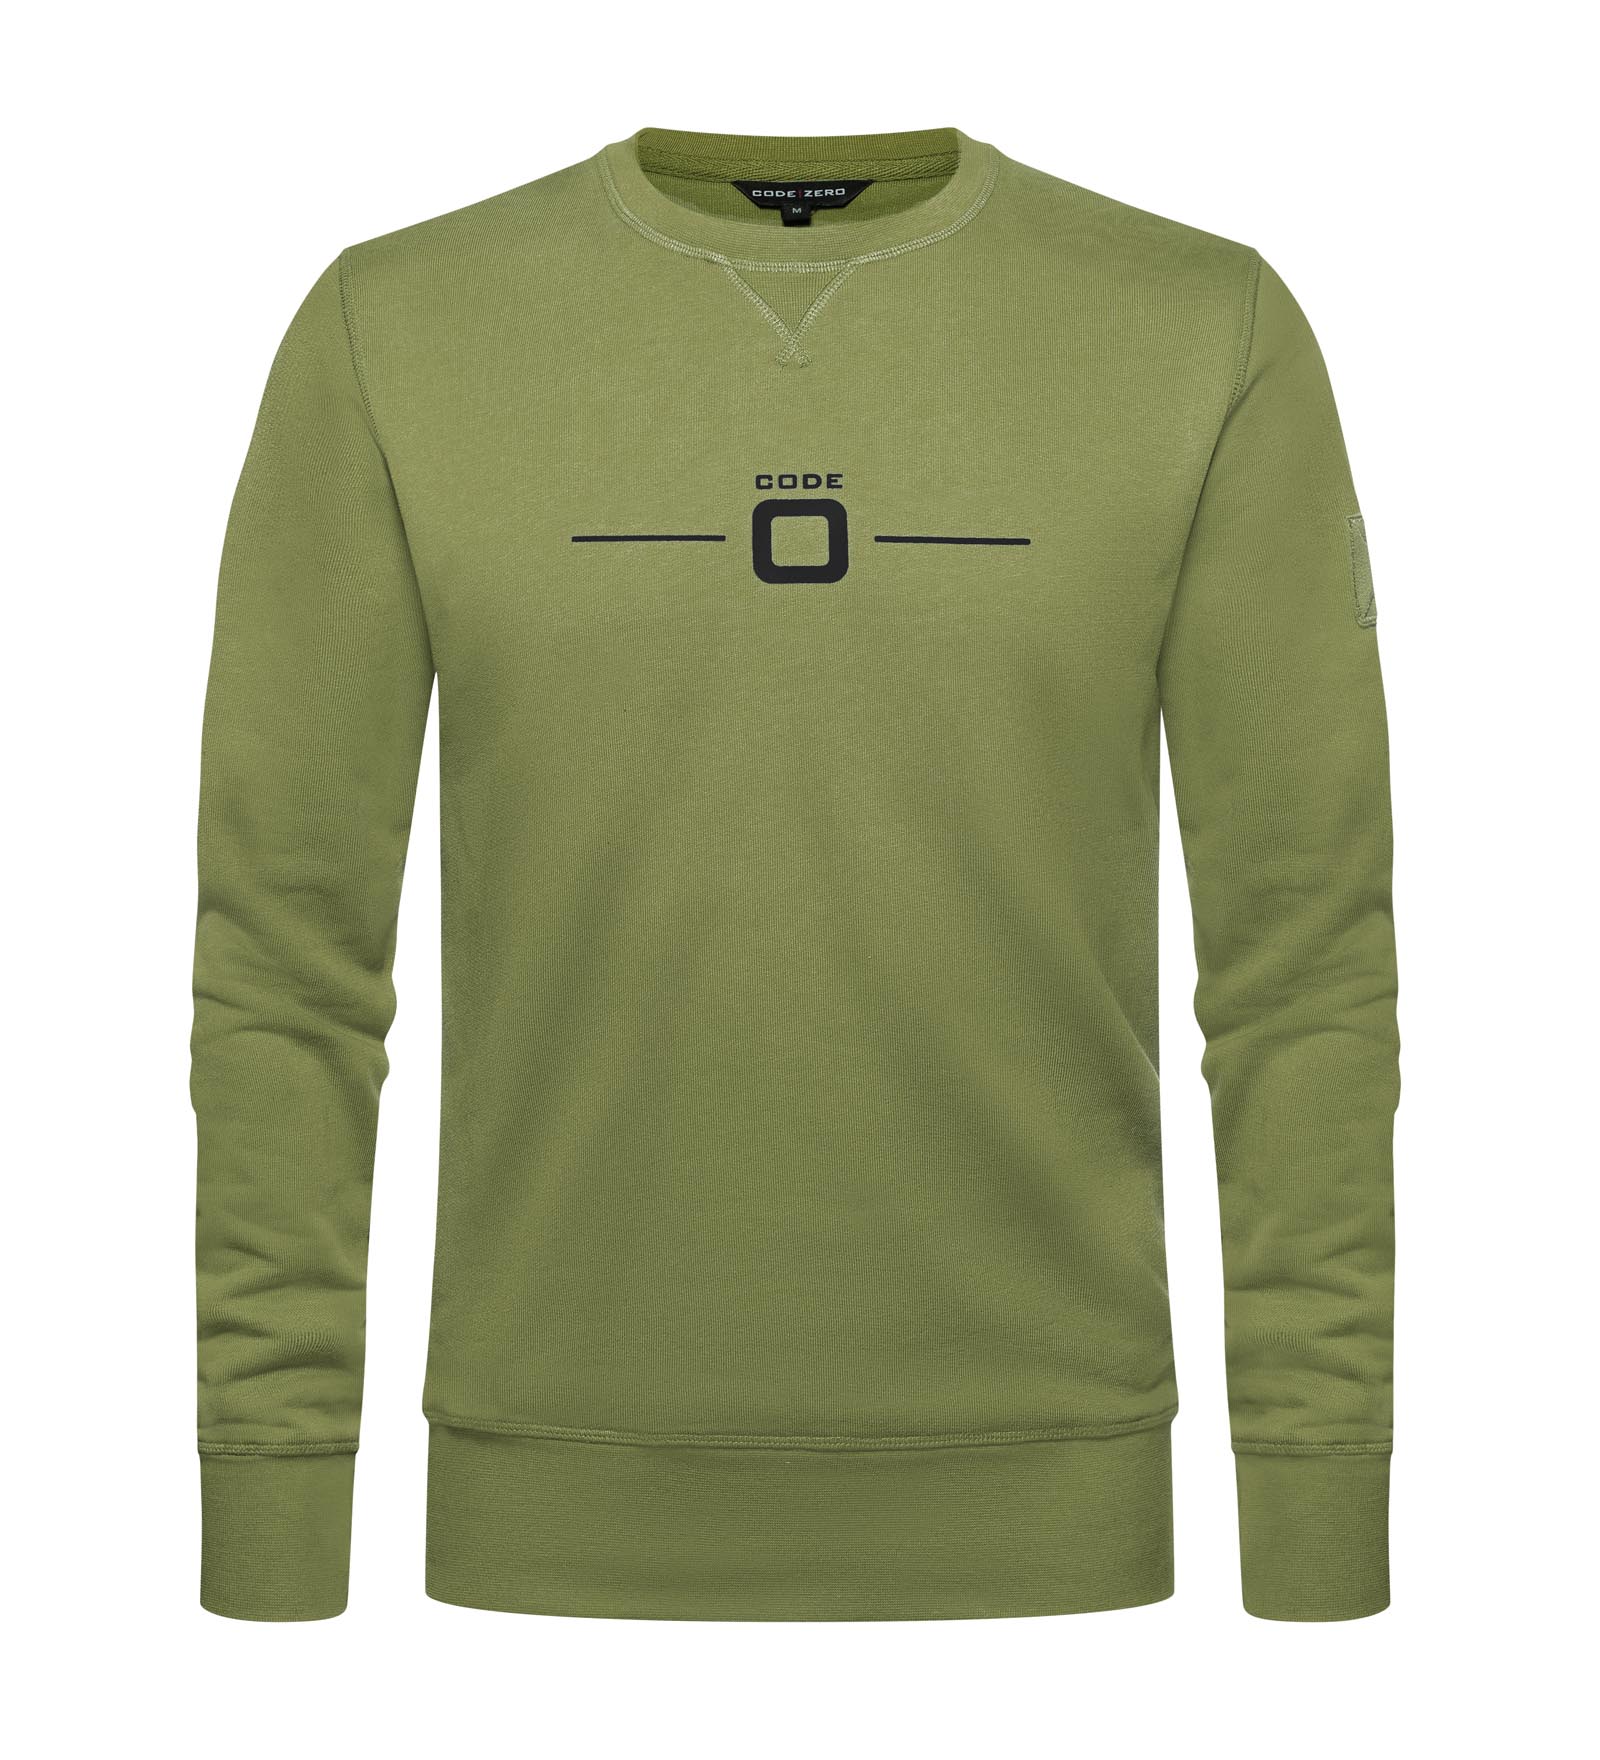 Sweatshirt Herren Upwind grün XXL CODE-ZERO von CODE-ZERO